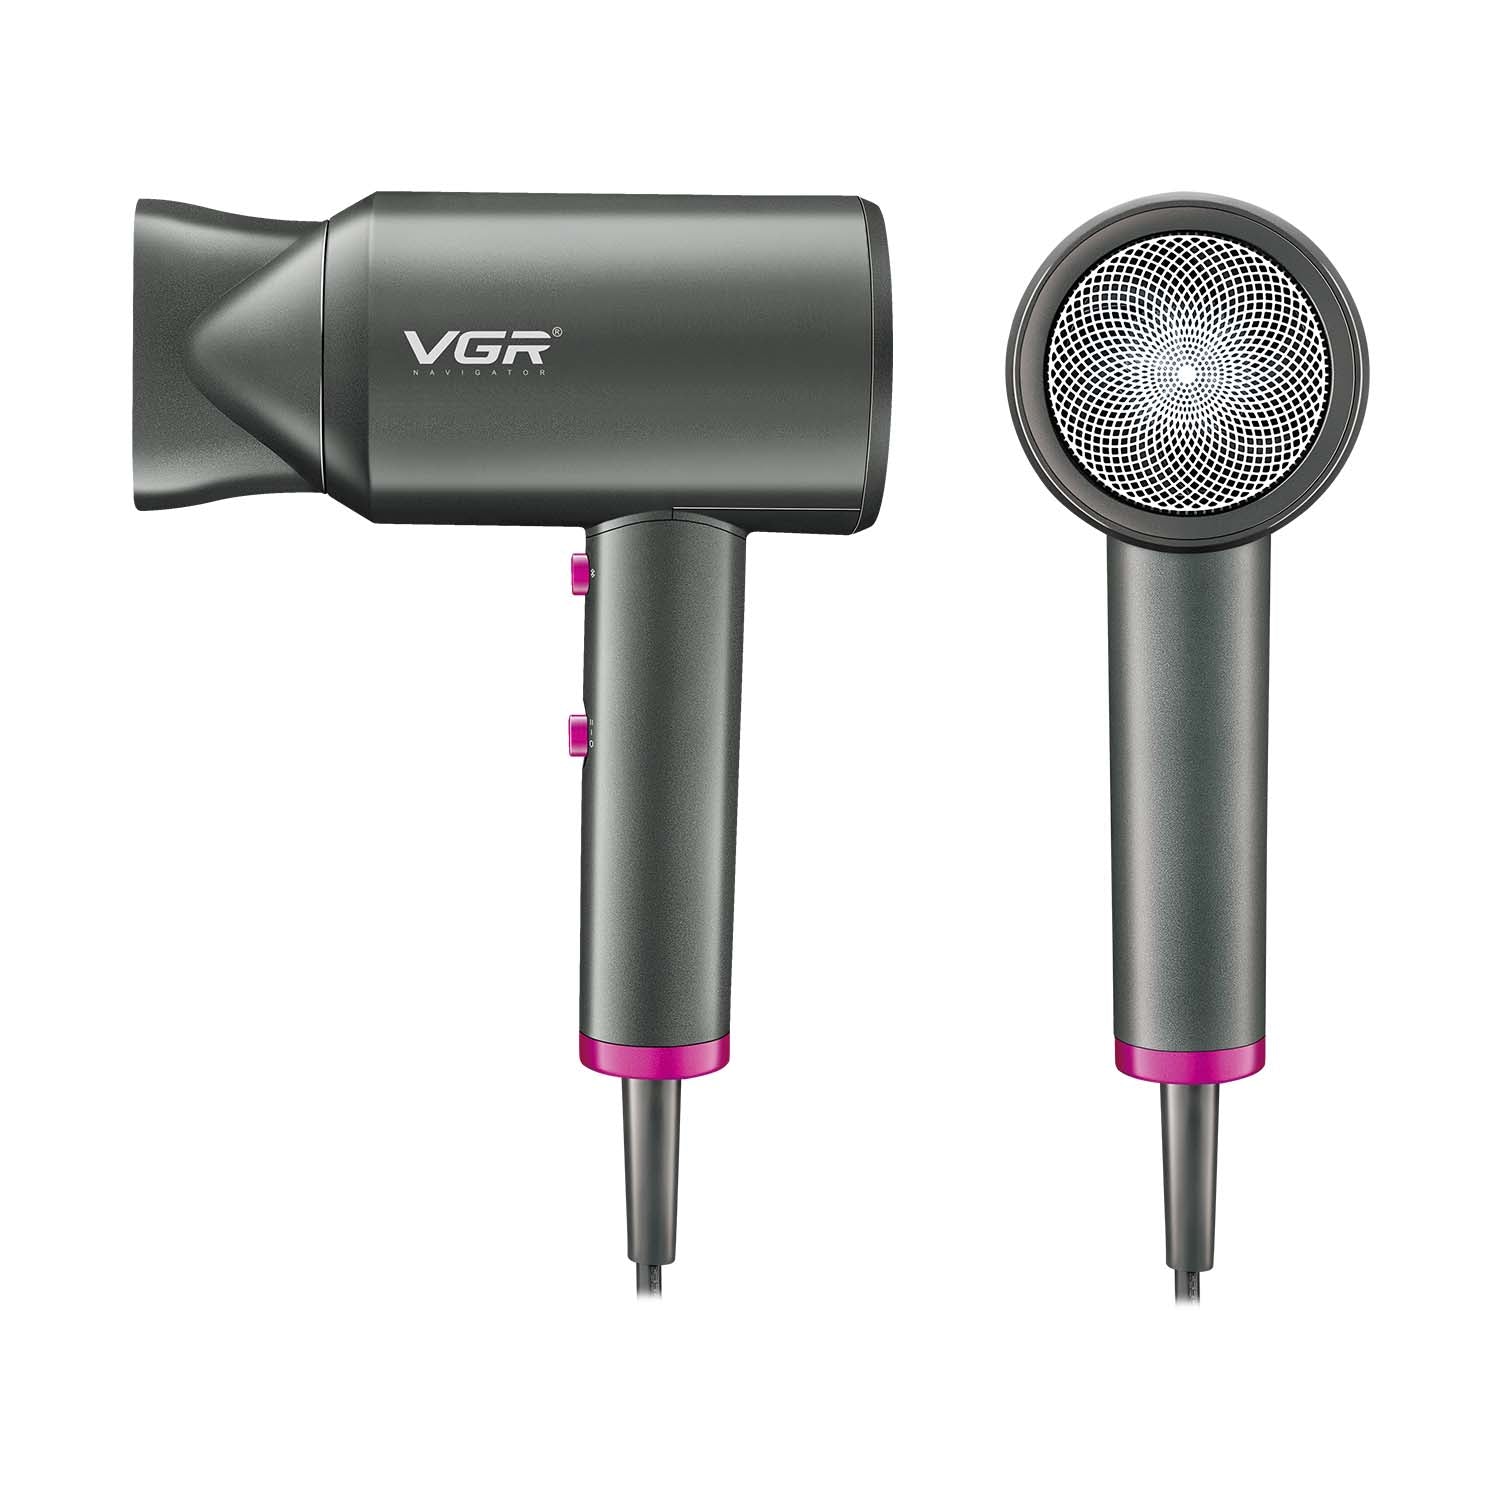 VGR V-400 Hair Dryer For Unisex, Black